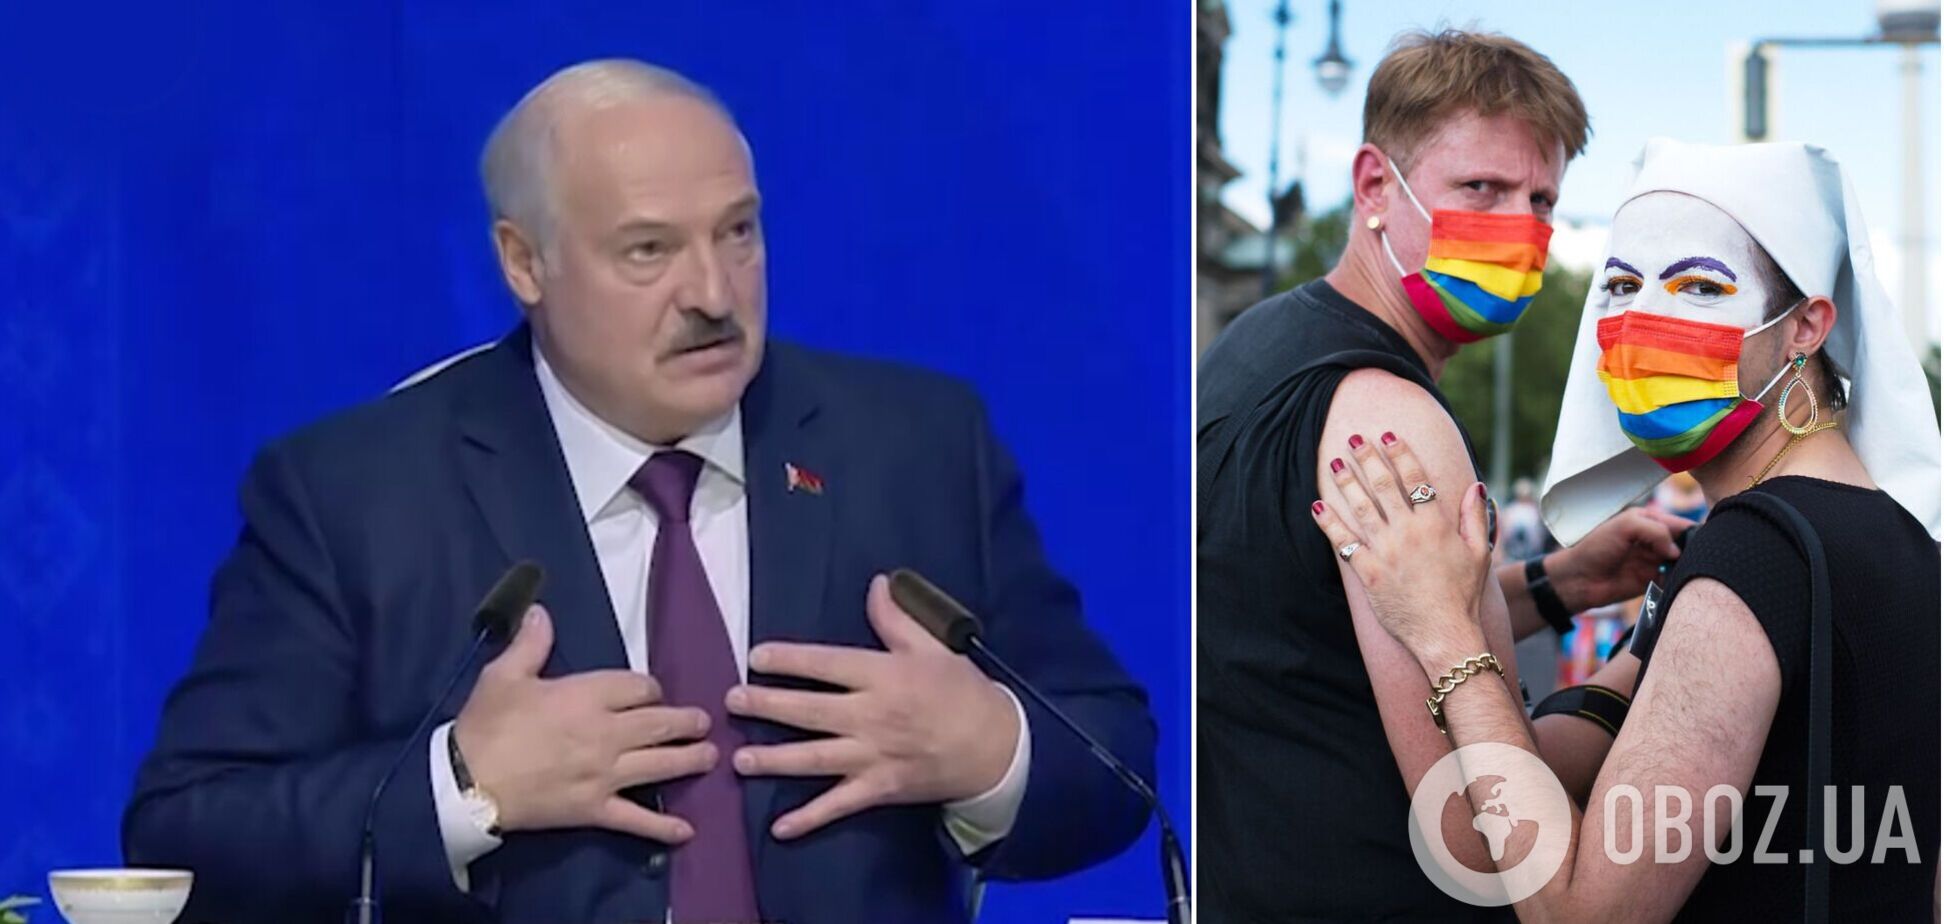 'Девченок я прощаю': Лукашенко перенял 'опыт' Путина и выдал перл о геях и лесбиянках. Видео